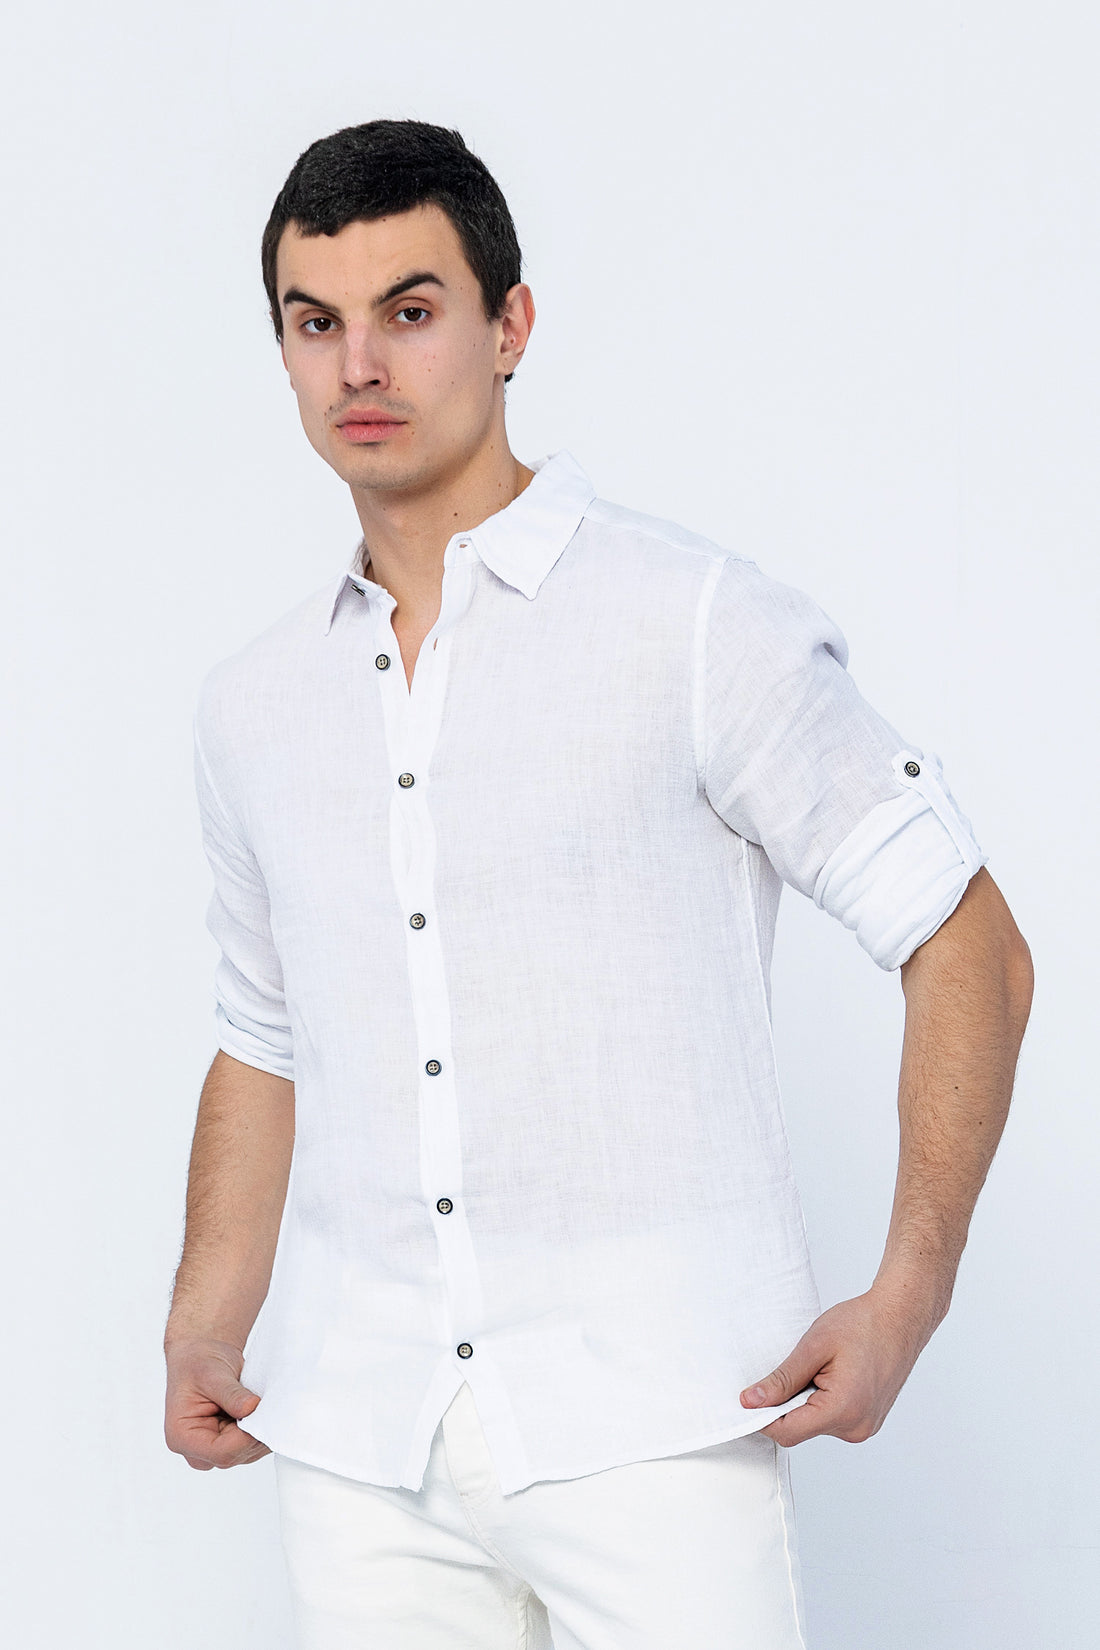 Collard Linen Shirt - White